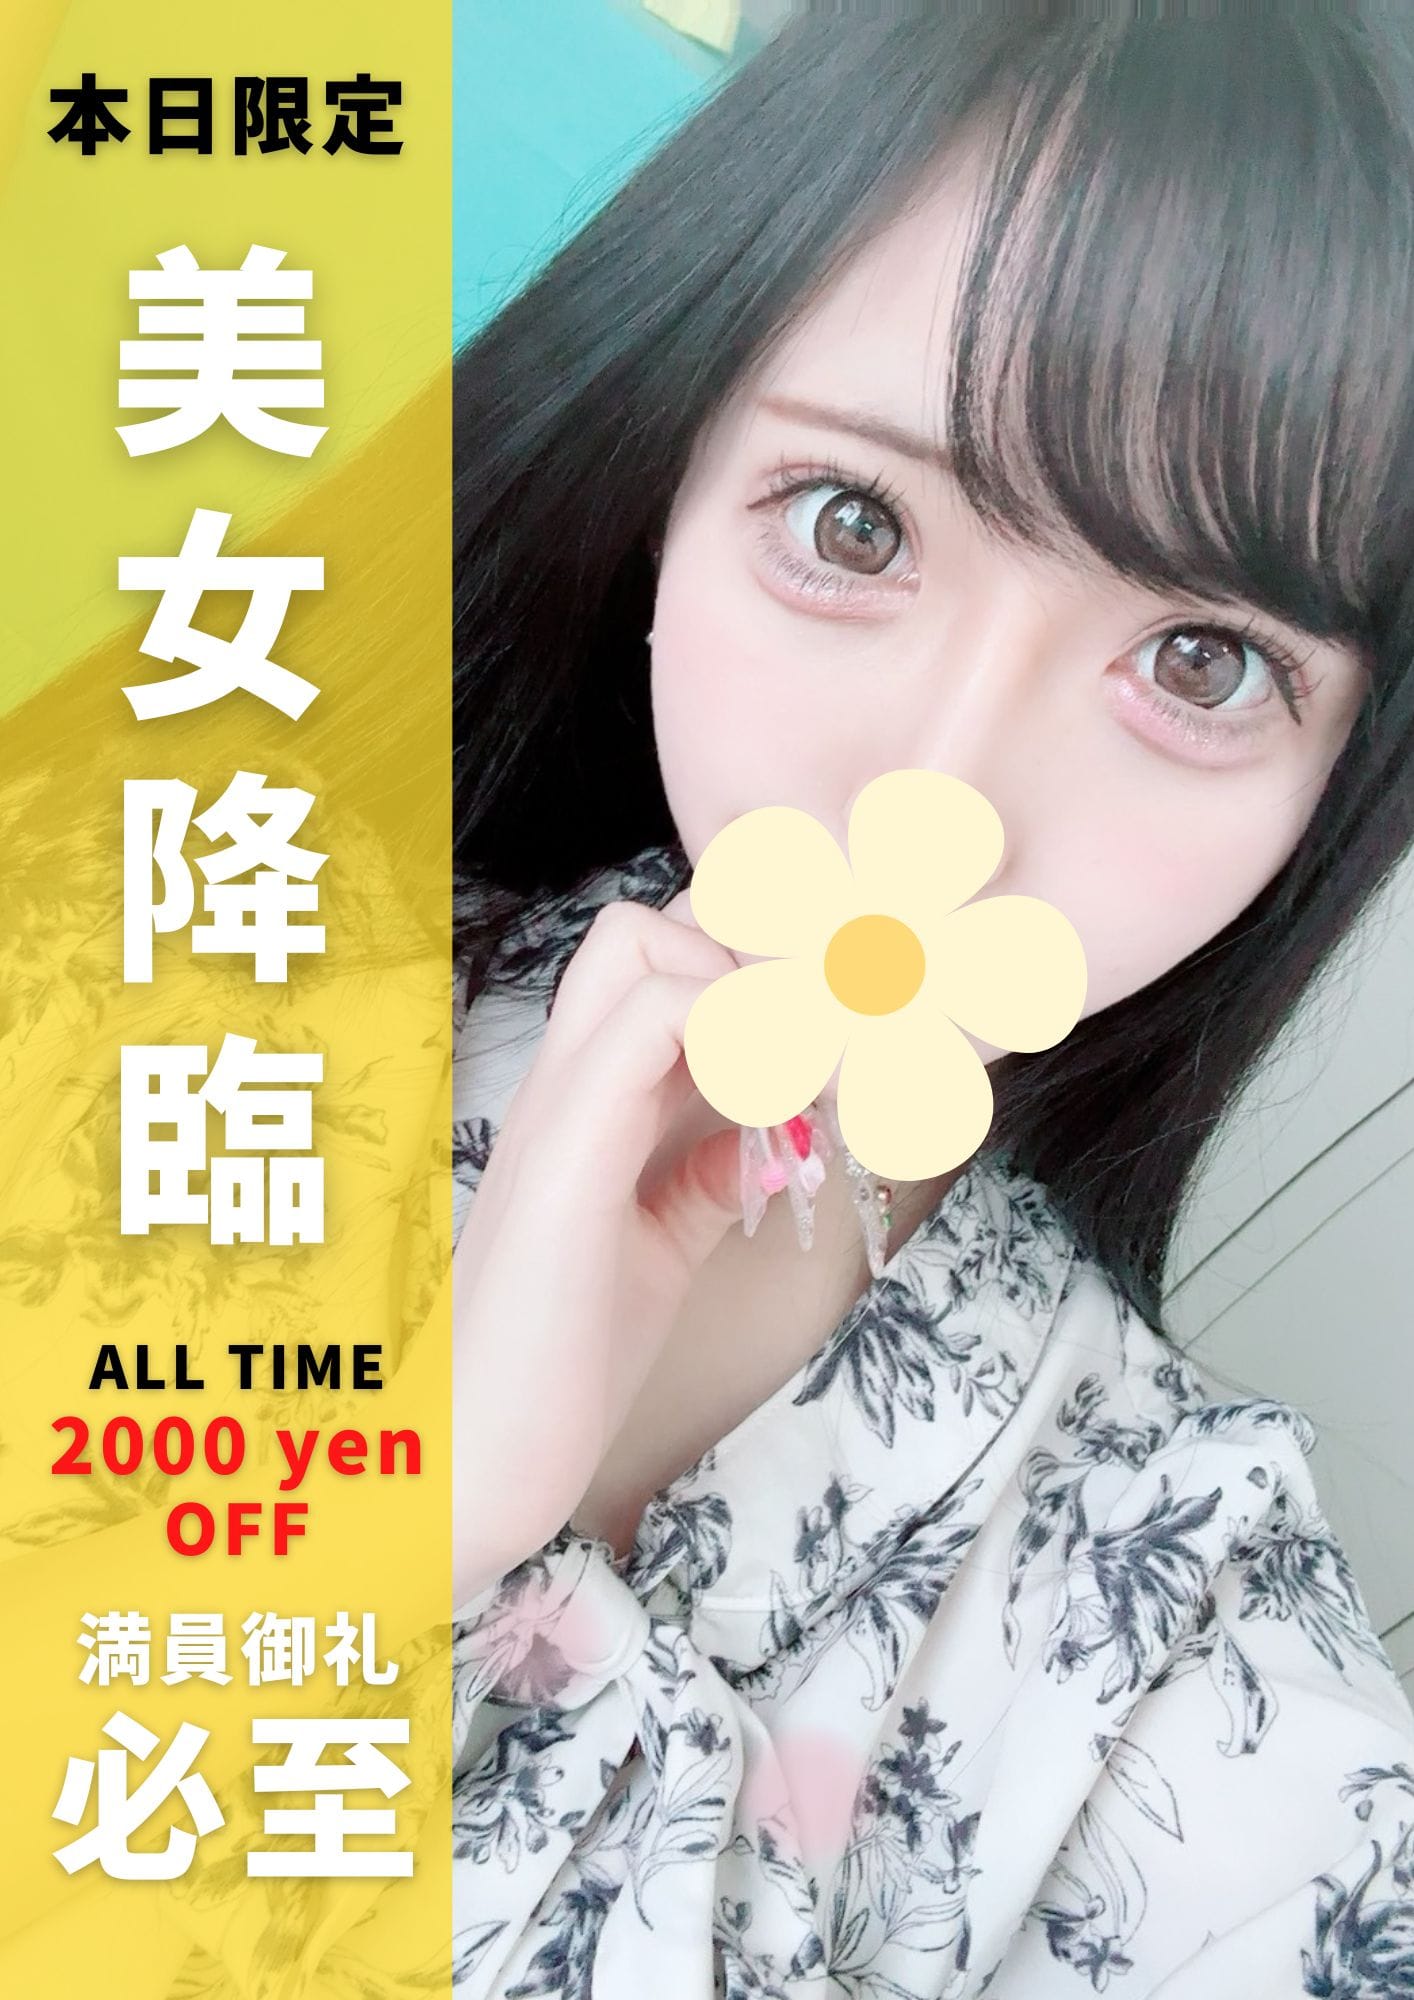 「特選美女入店!!本日限定2000円OFF♪」 | 埼玉デリヘルのお得なニュース